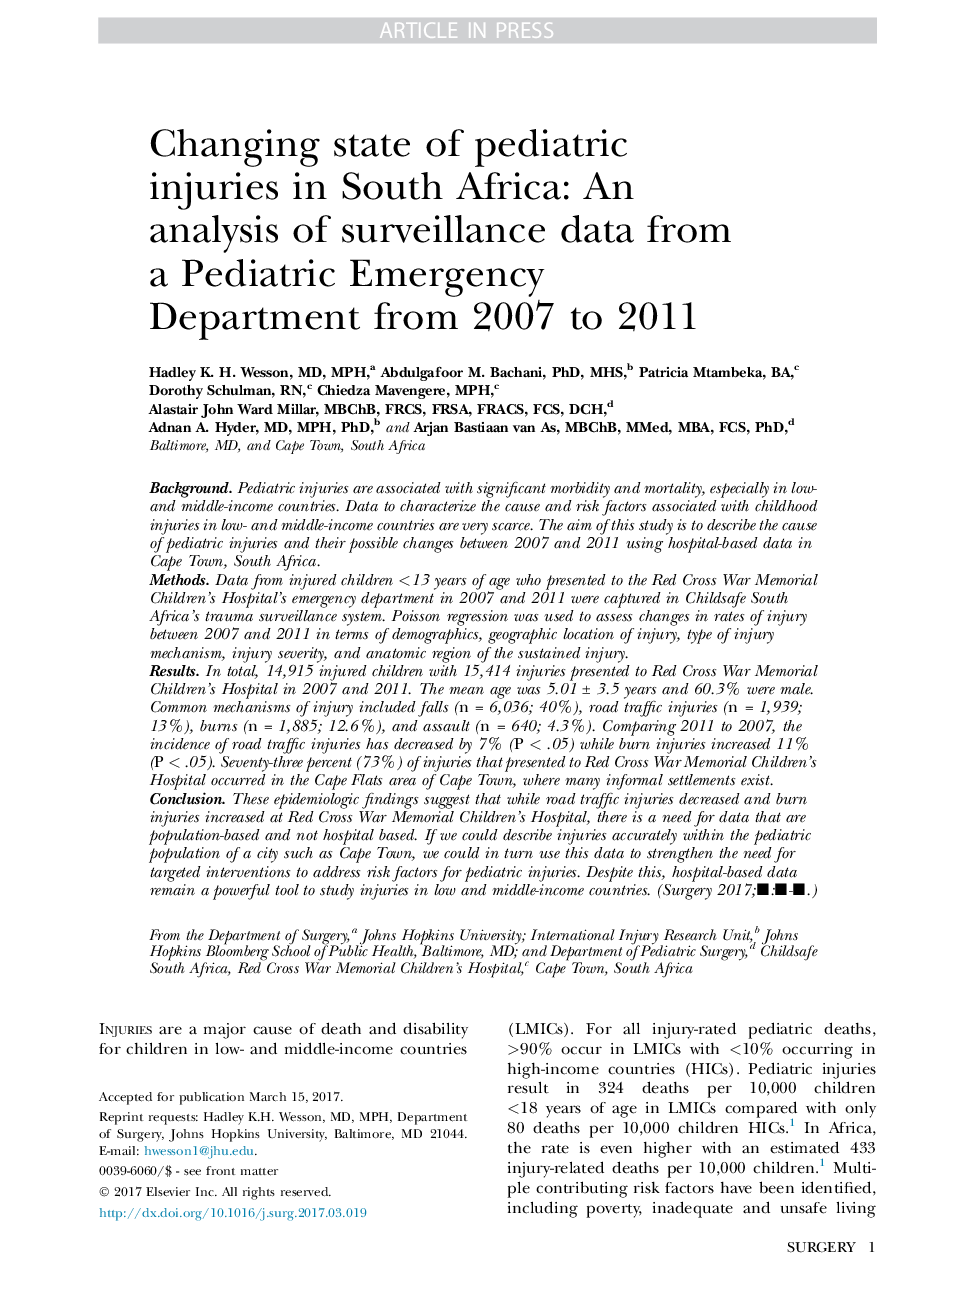 تغییر وضعیت آسیب های کودکان در آفریقای جنوبی: تجزیه و تحلیل داده های مراقبت از بخش اورژانس کودکان از سال 2007 تا 2011 